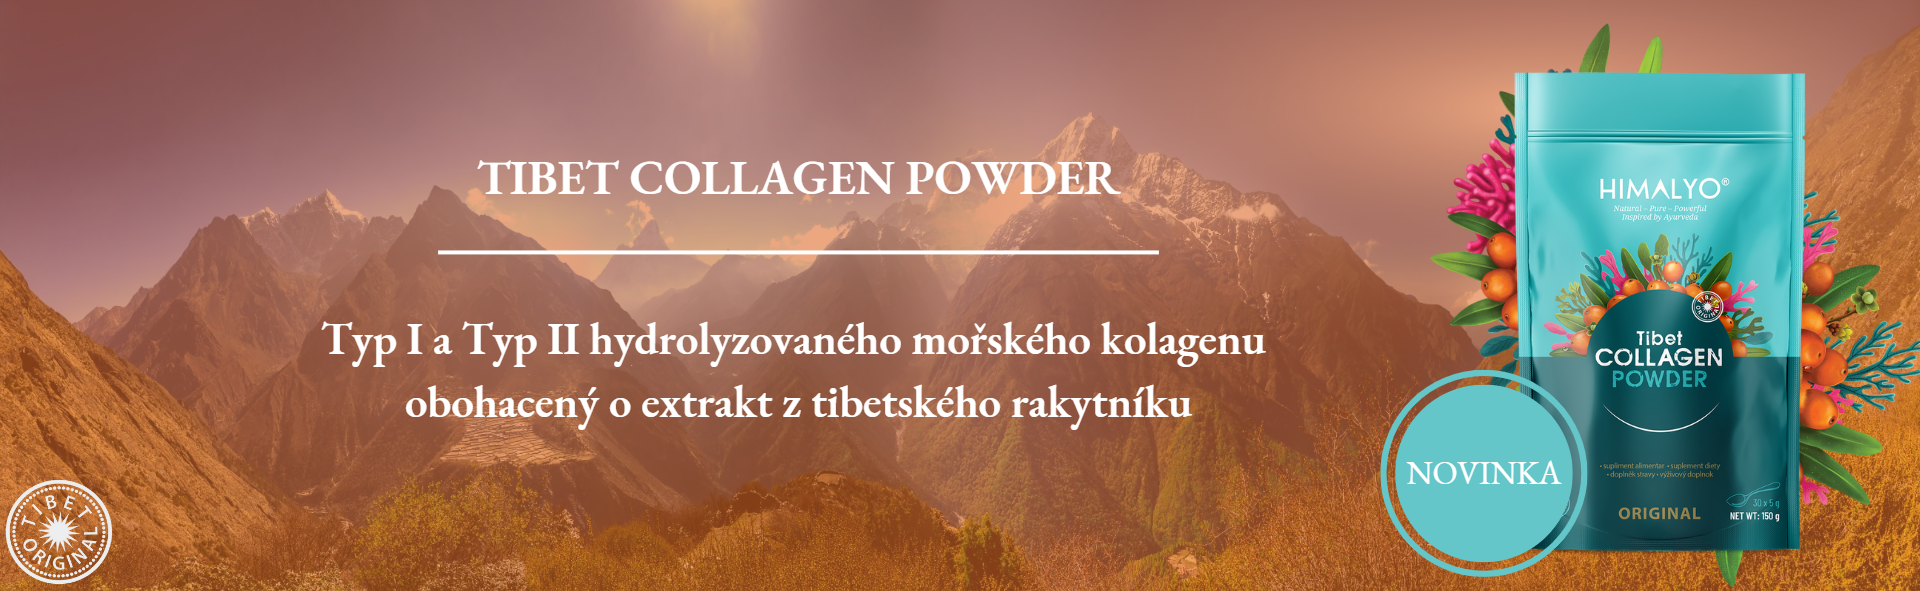 TIbet COLLAGEN Powder - Novinka